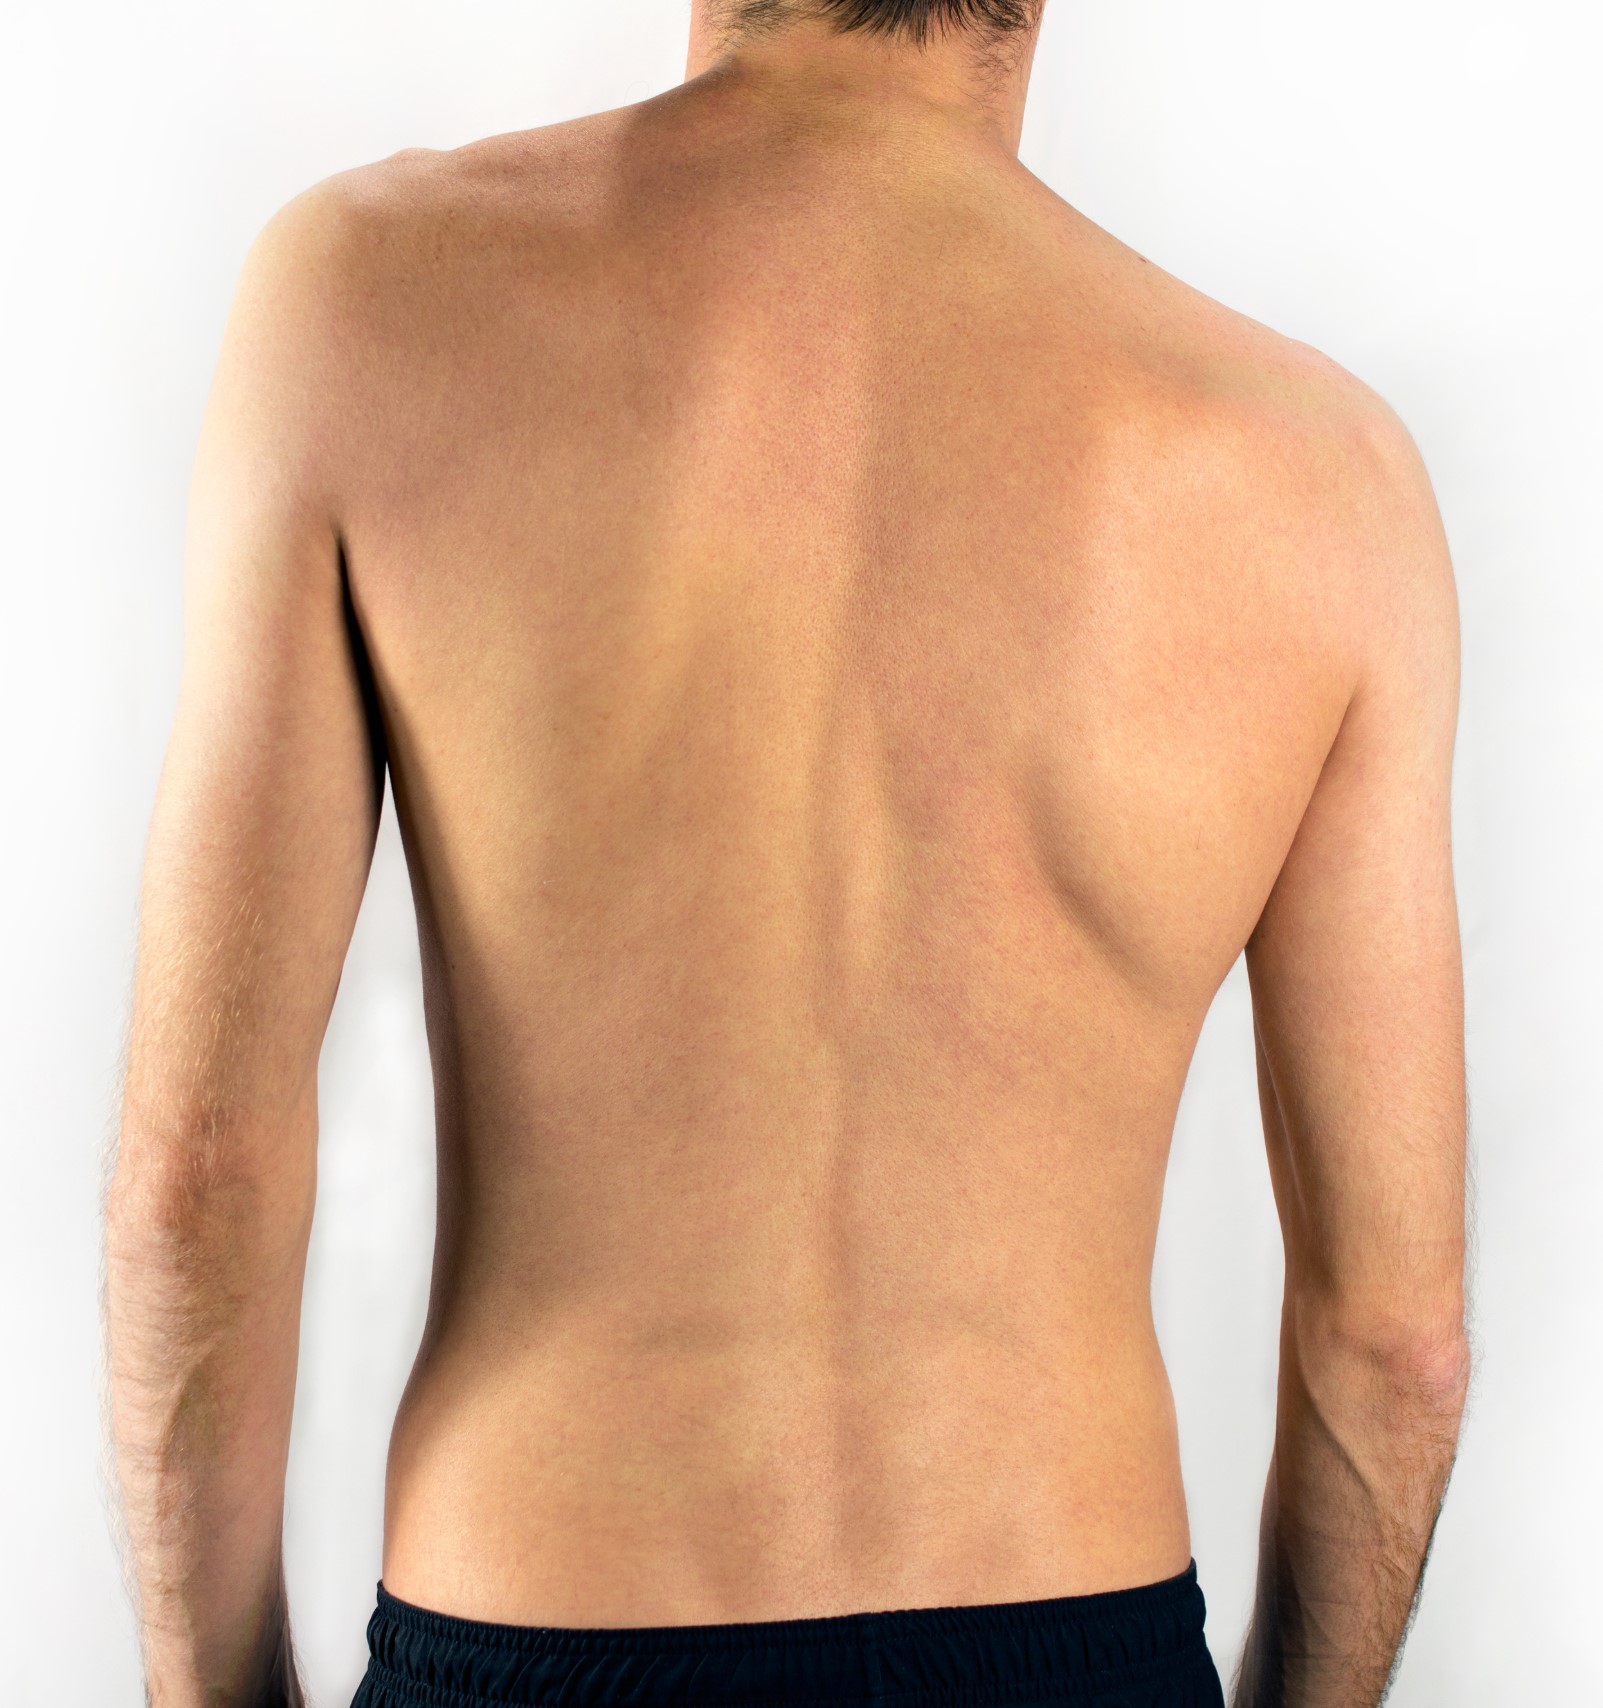 nugaros skausmas ir pečių palaikimo